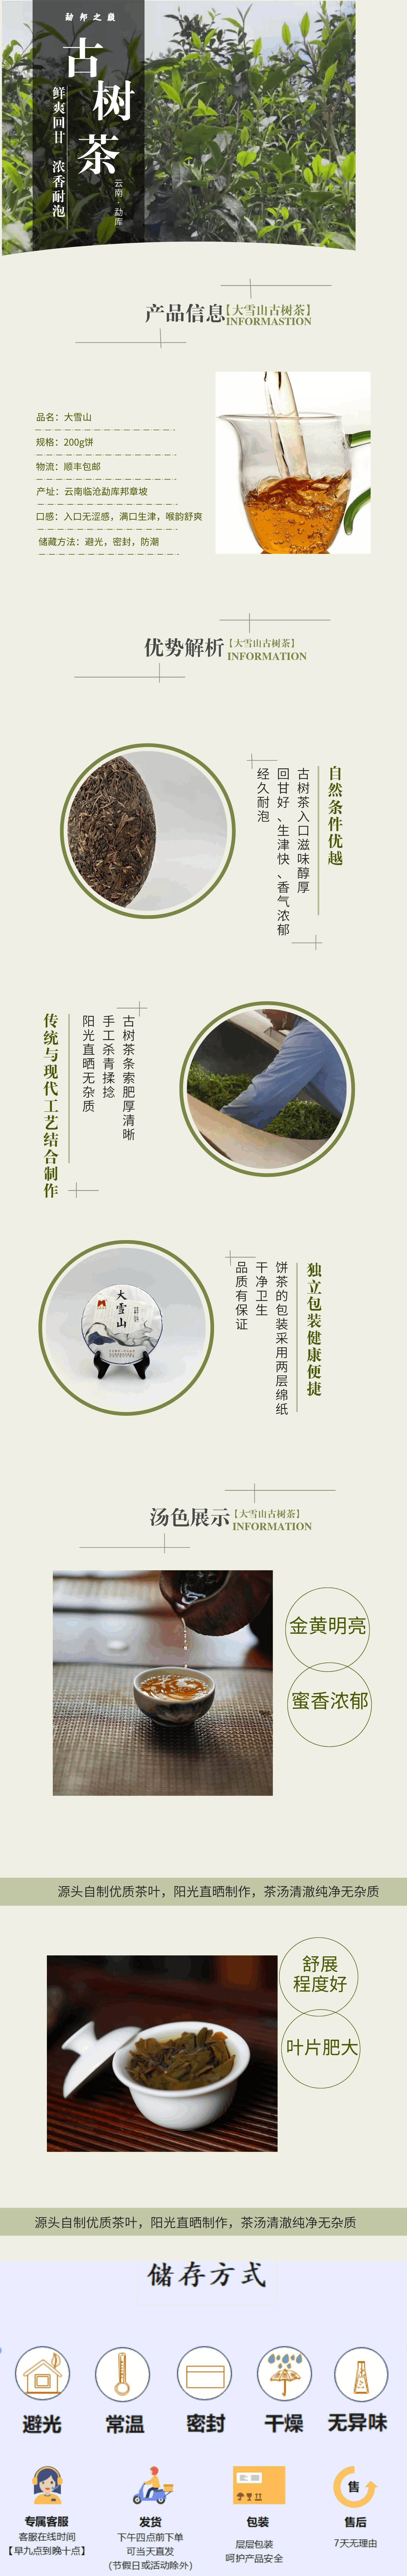 2020大雪山商品详情.png